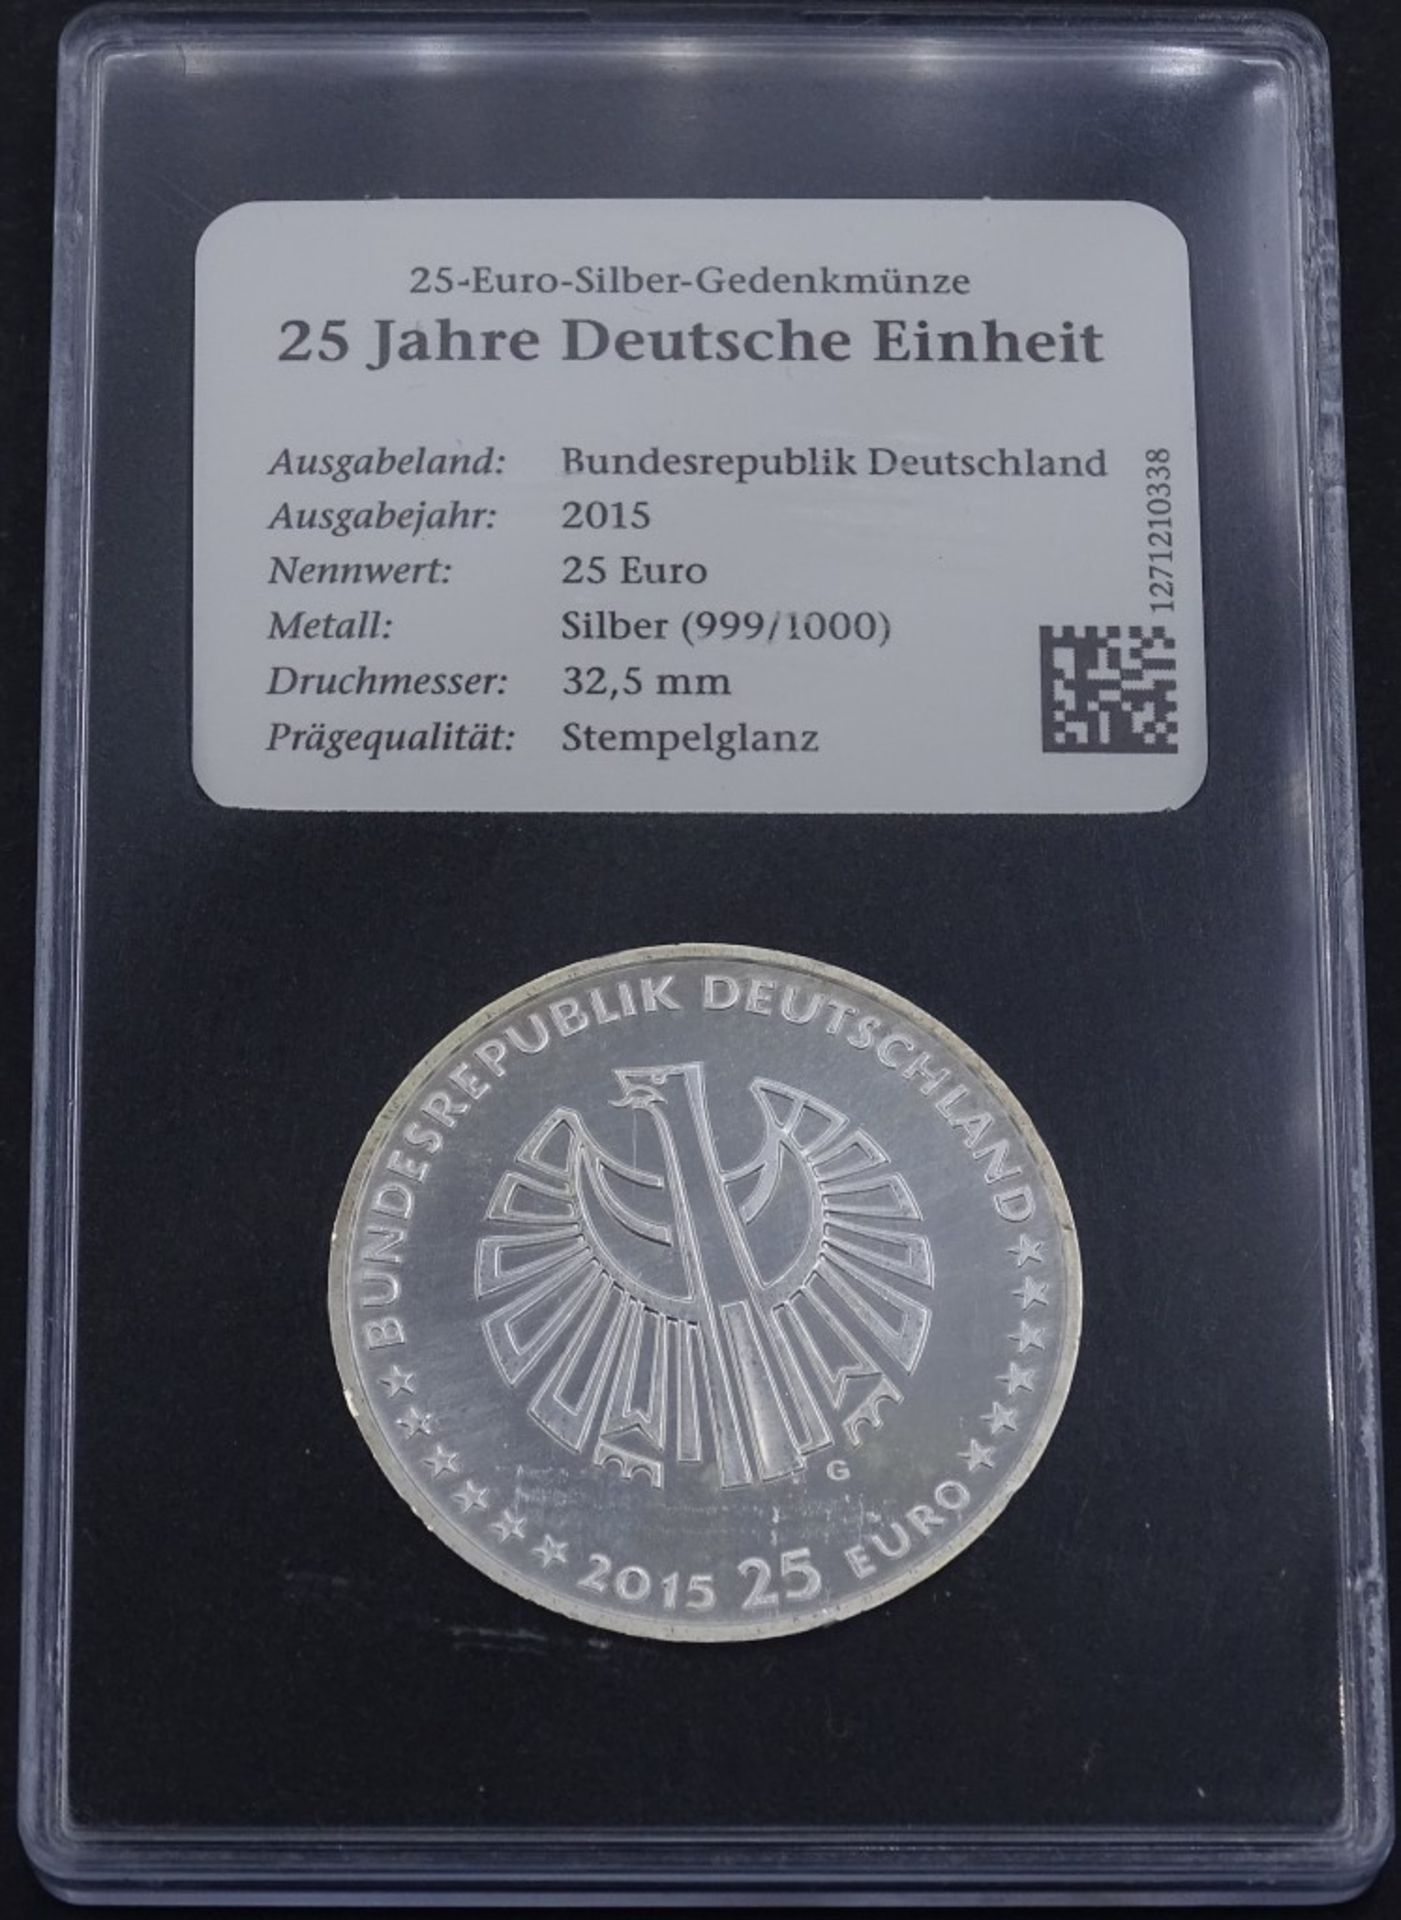 25 Euro Silber Gedenkmünze, 2015, stempelglanz, Silber 999/000, 25 Jahre Deutsche Einhei- - -22.61 %